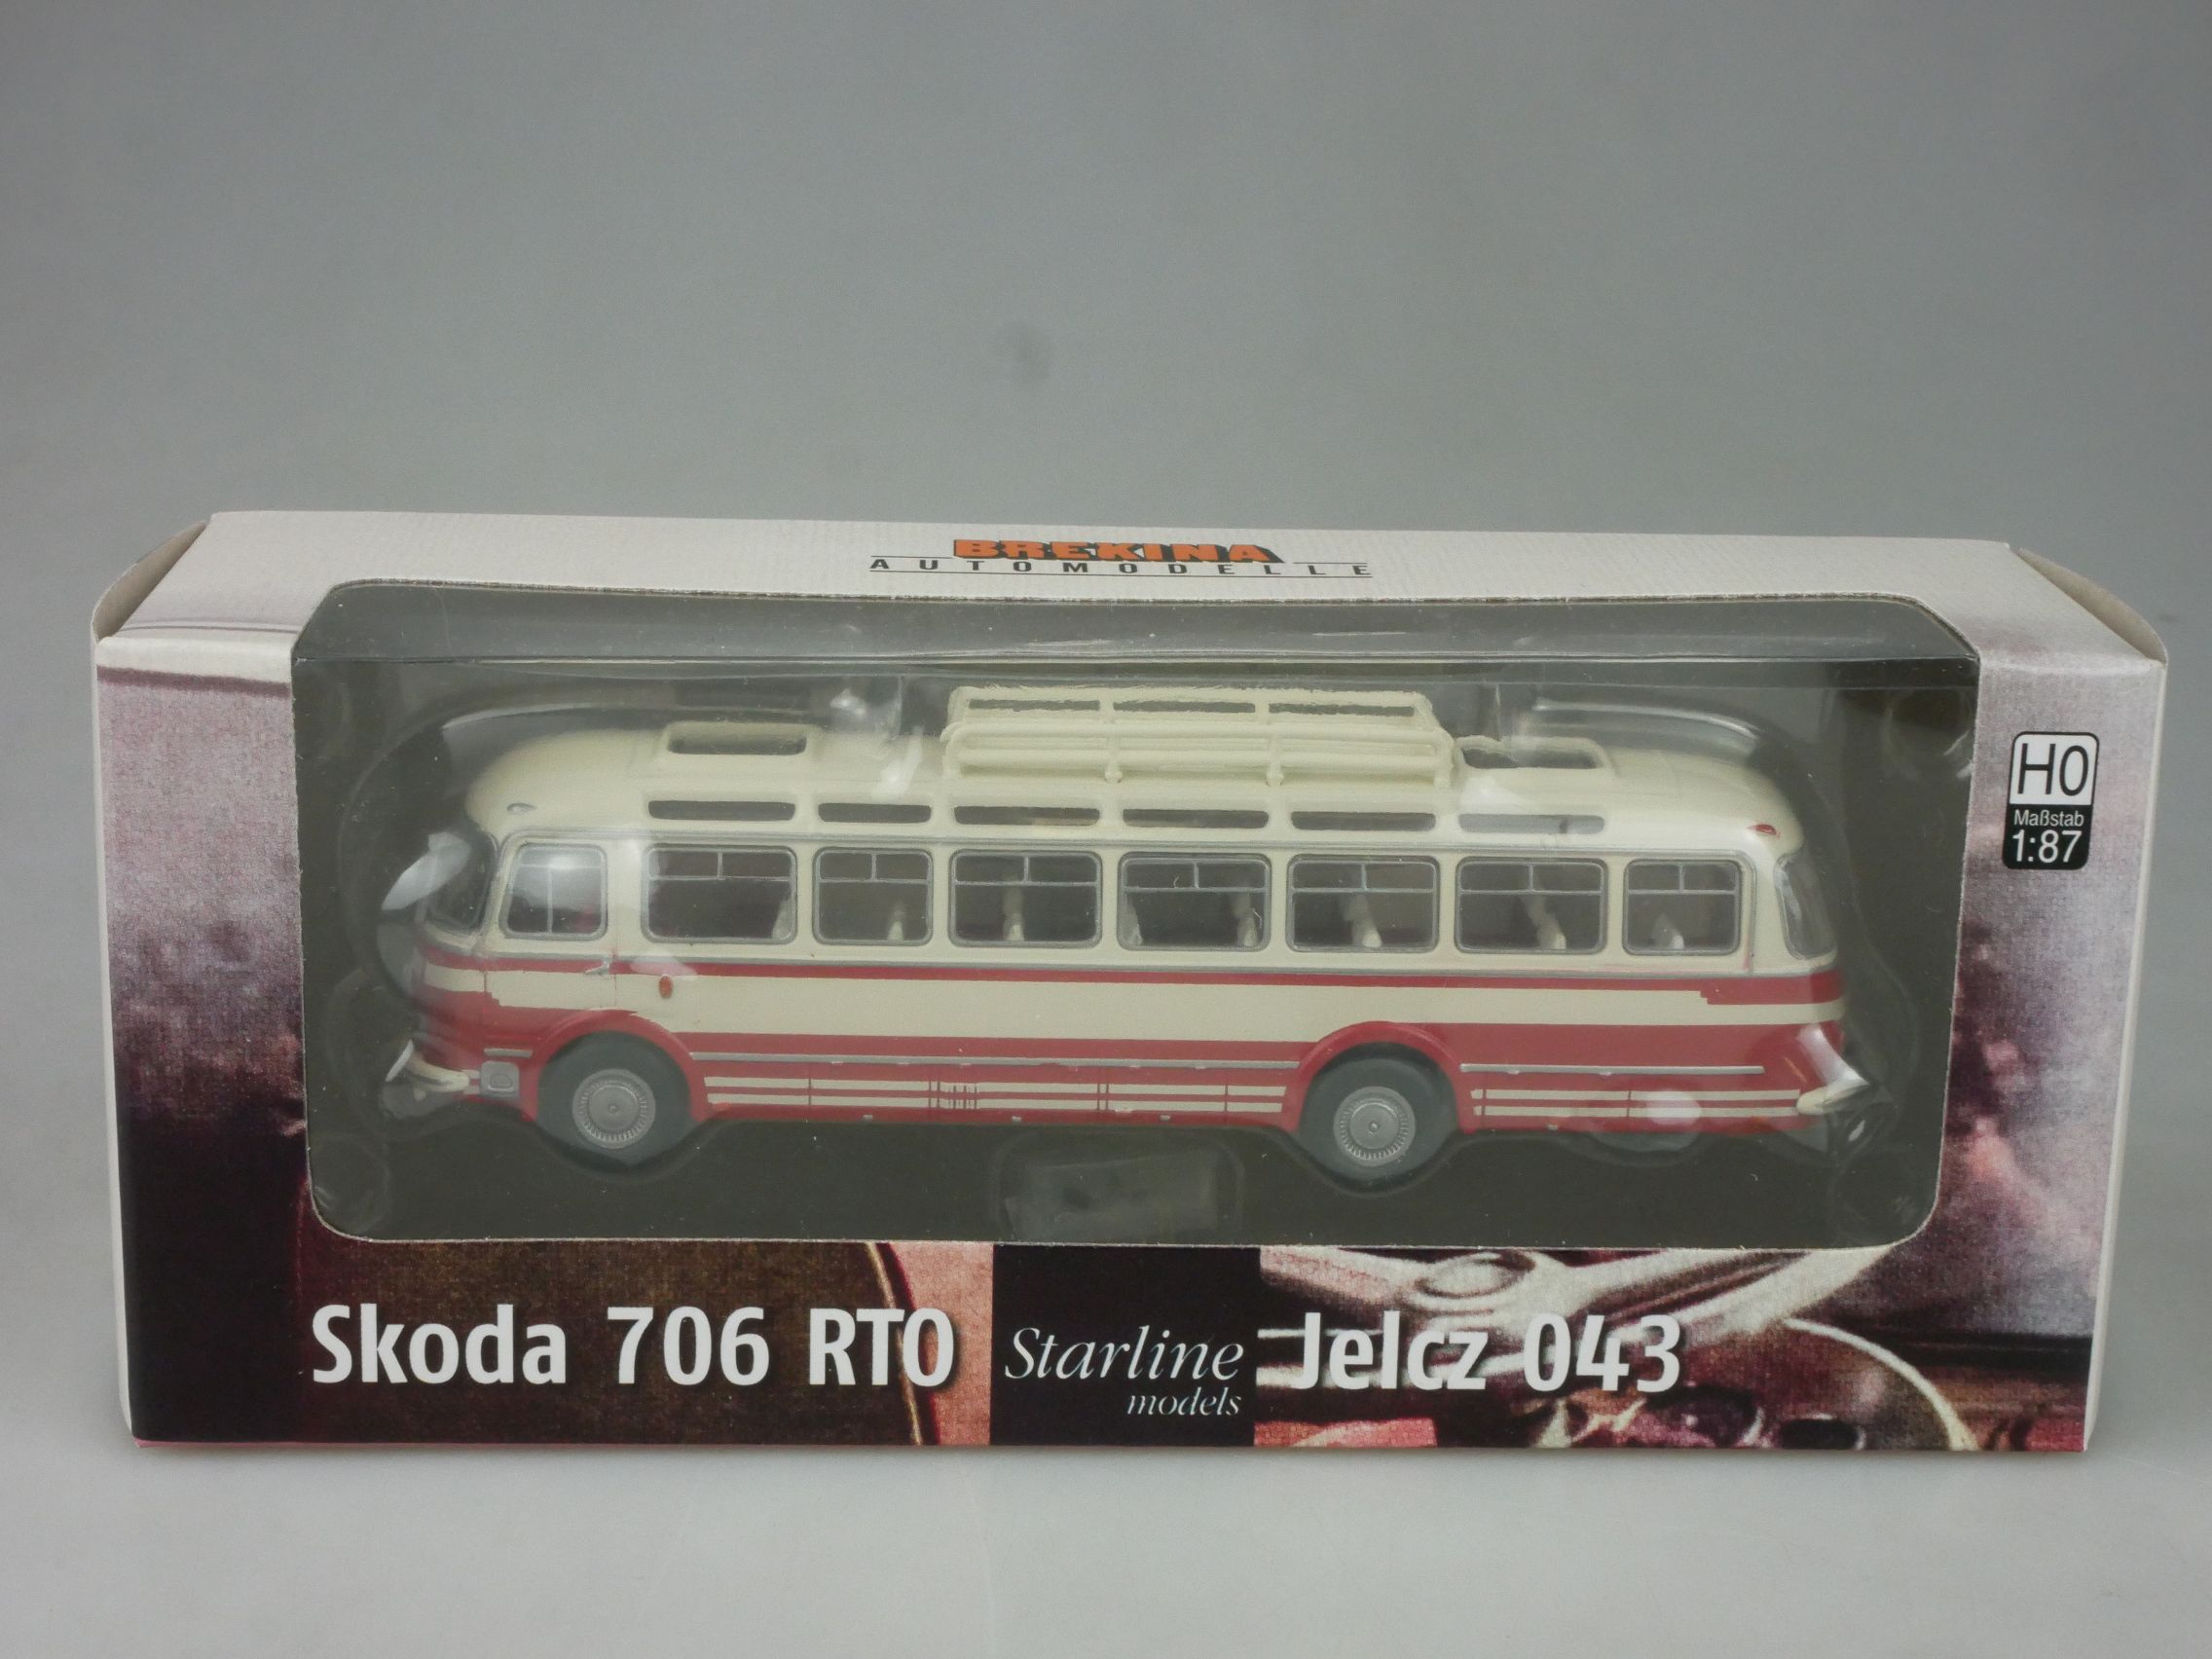 Brekina H0 Skoda 706 RTO Starline Jelcz 043 Bus in Box 126819